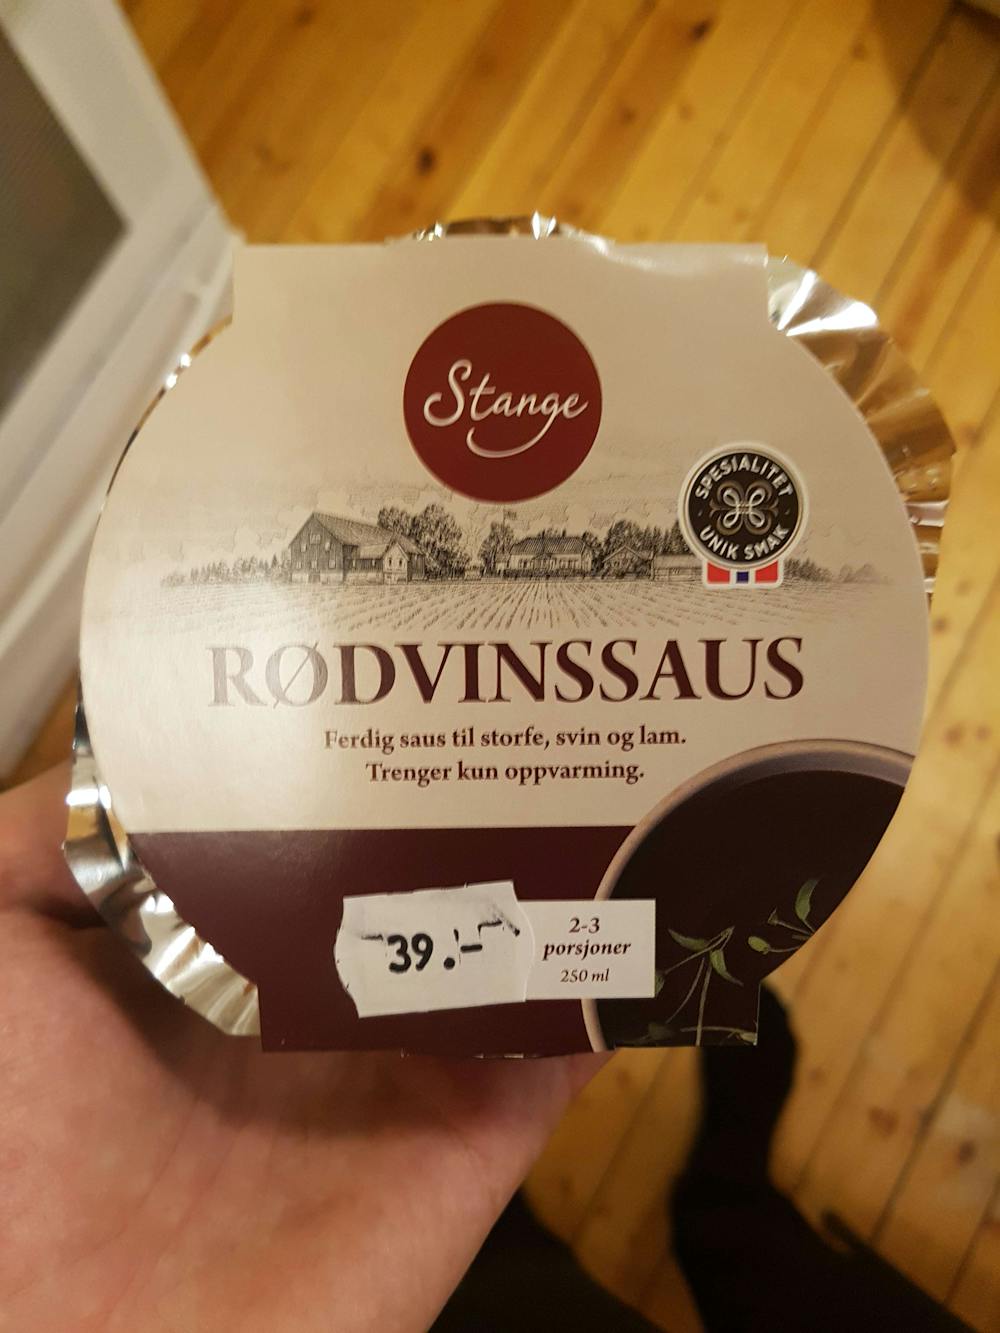 Rødvinssaus, Stange